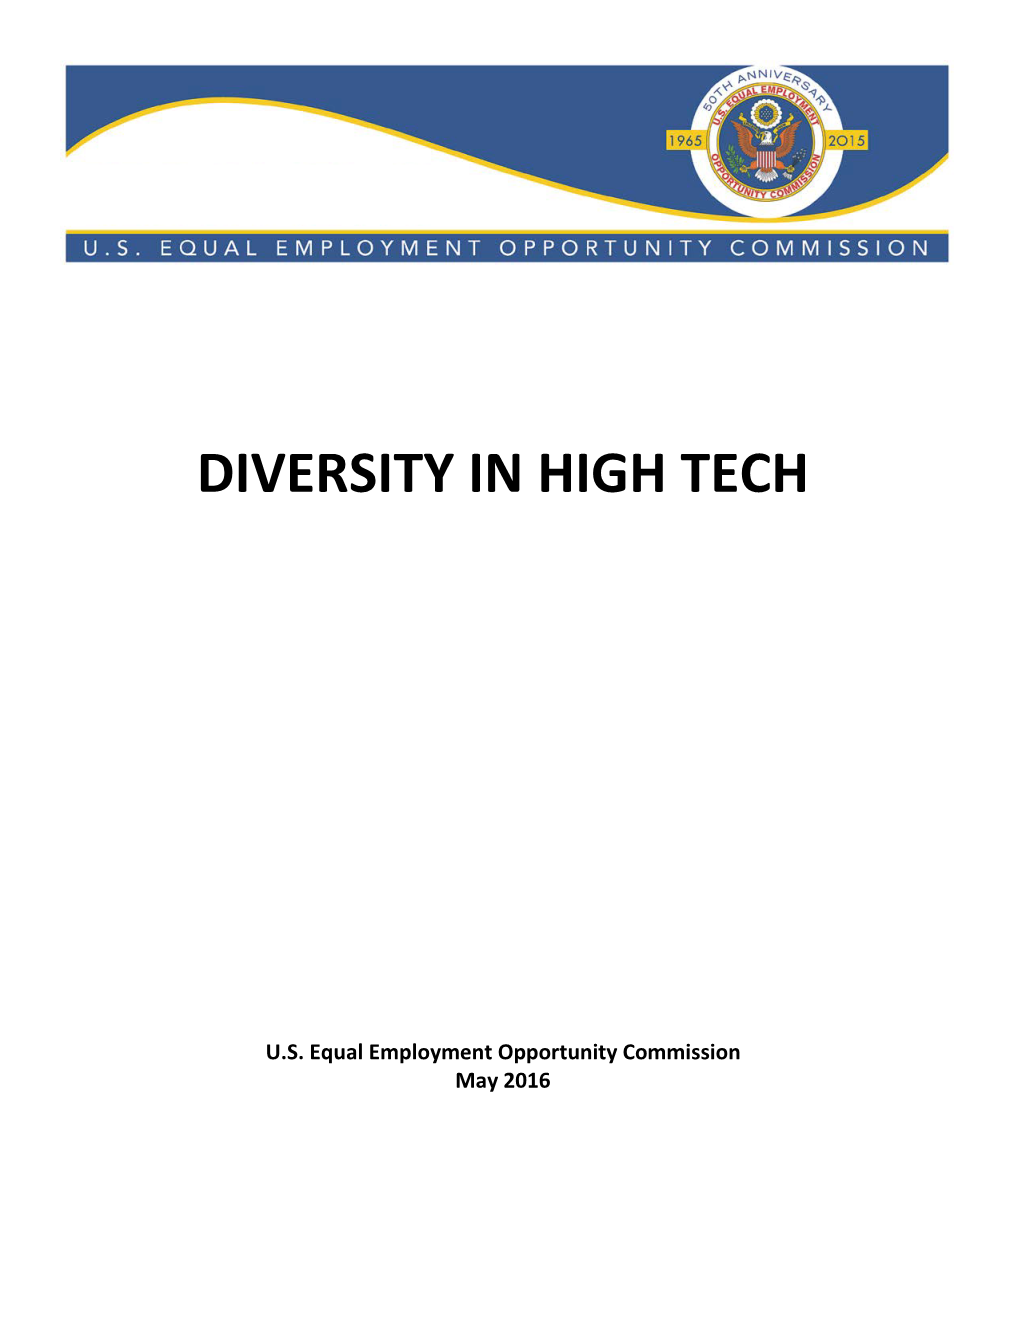 Diversity in High Tech